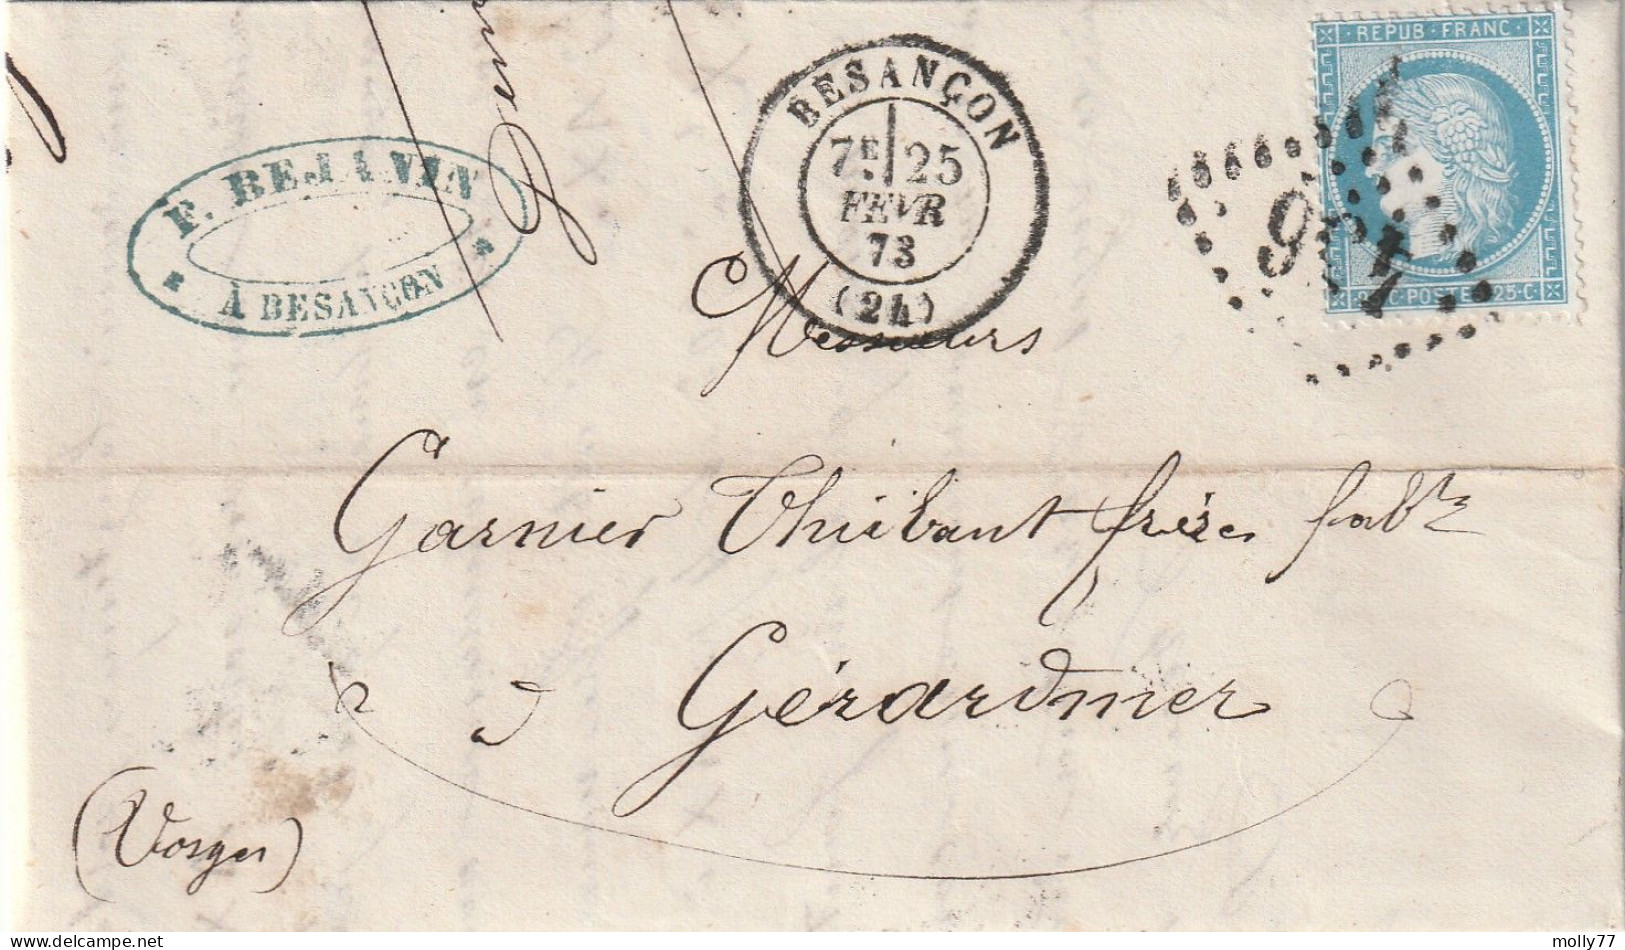 Lettre De Besançon à Gérardmer LAC - 1849-1876: Klassik